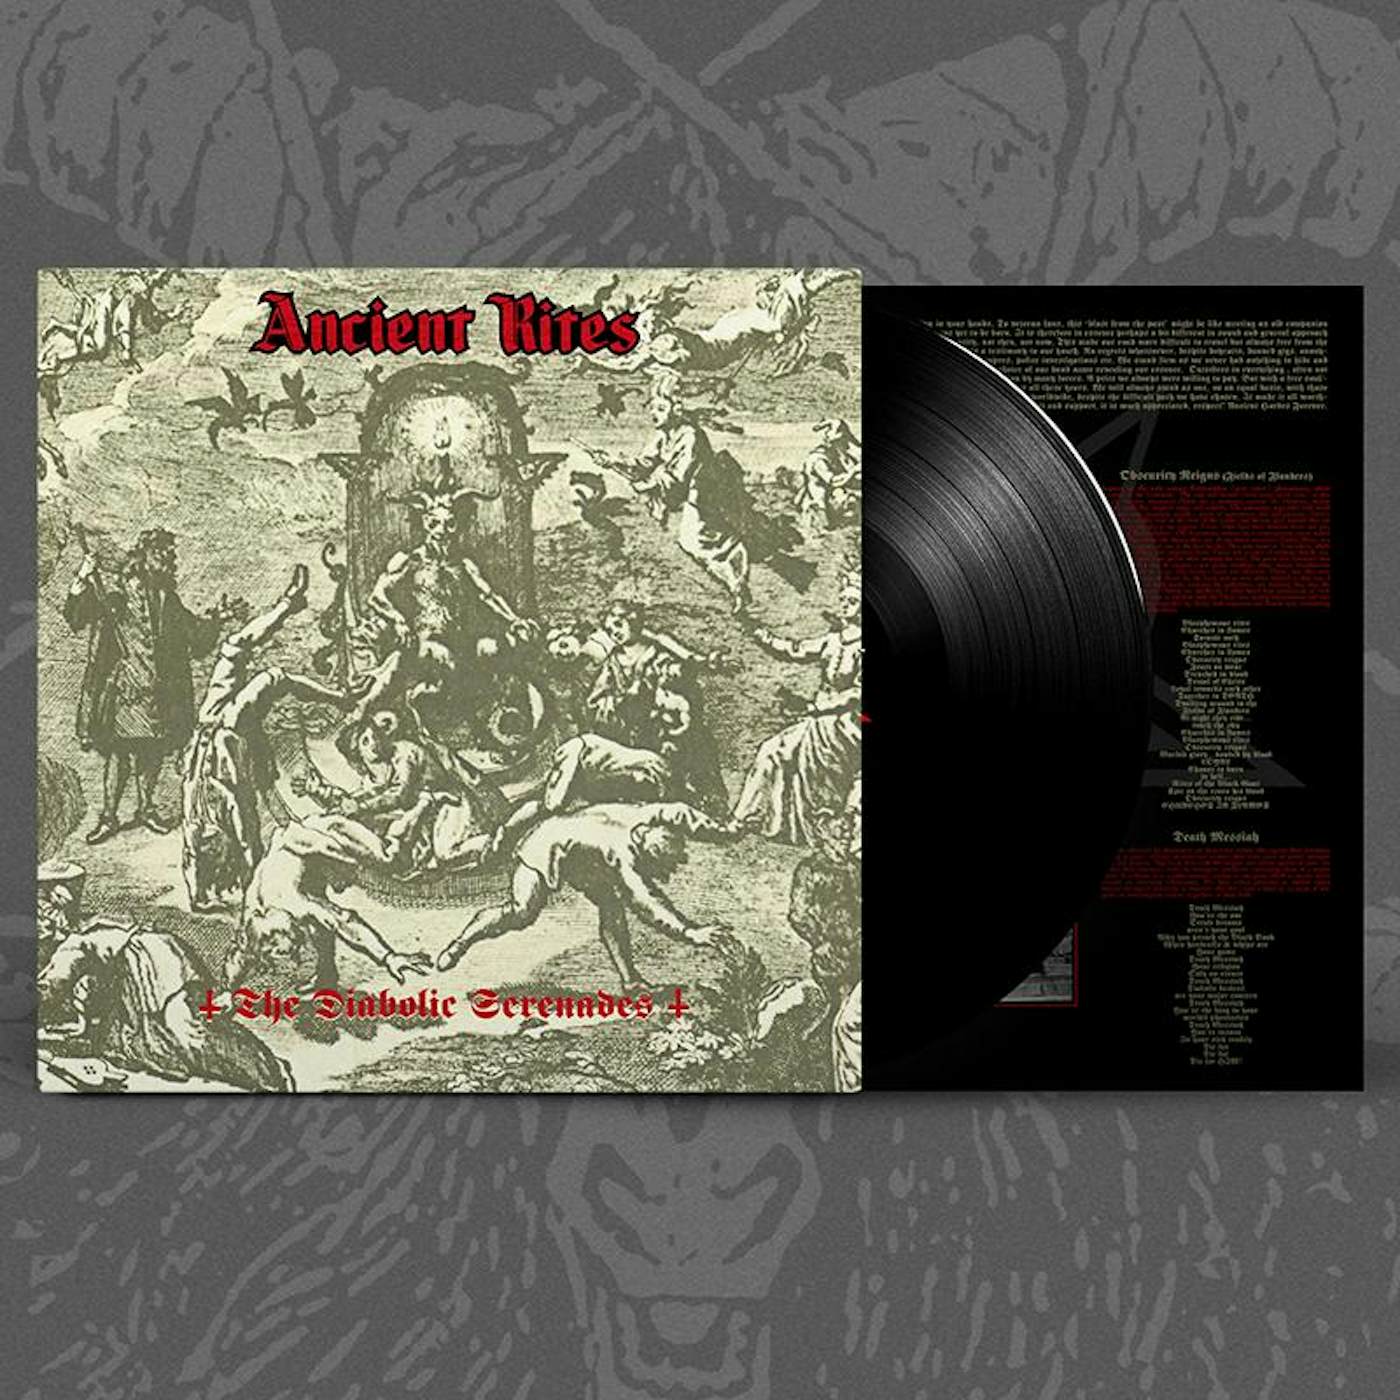 Ancient Rites "The Diabolic Serenades (black vinyl)" 12"